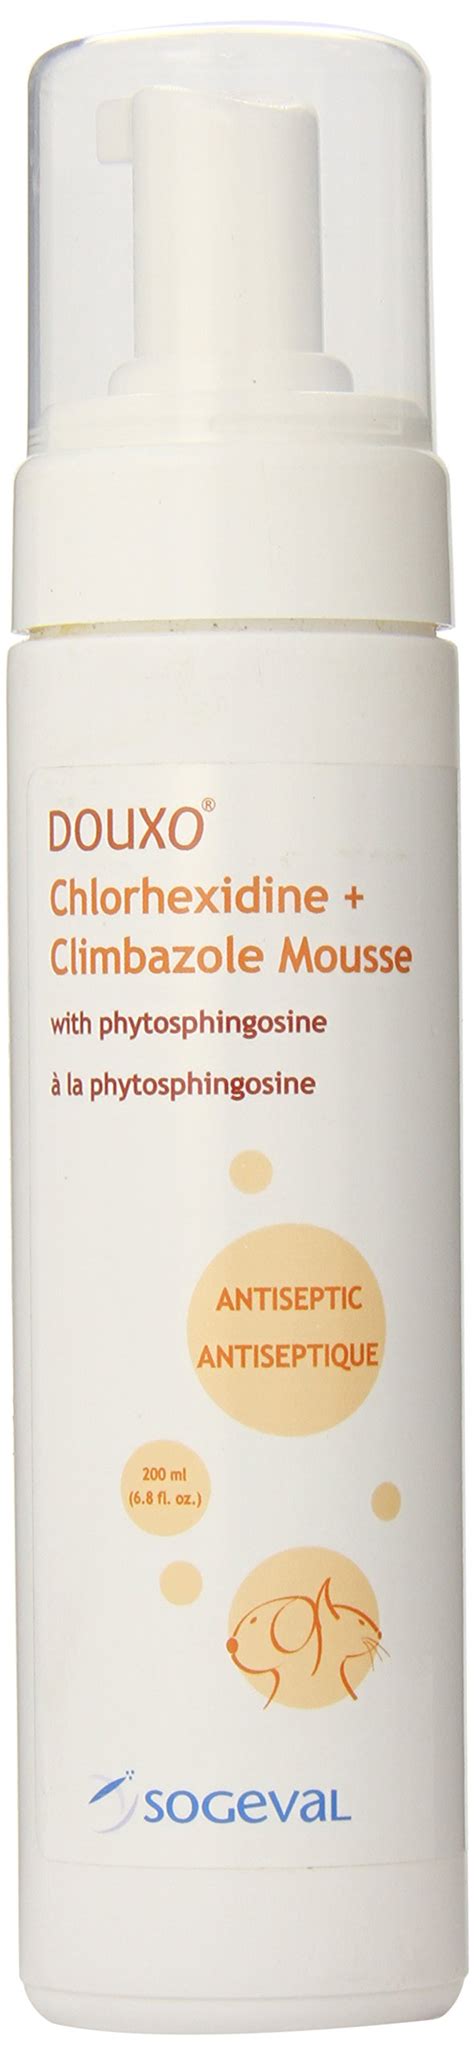 Douxo Antiseptic Chlorhexidine Climbazole Mousse 68 Oz